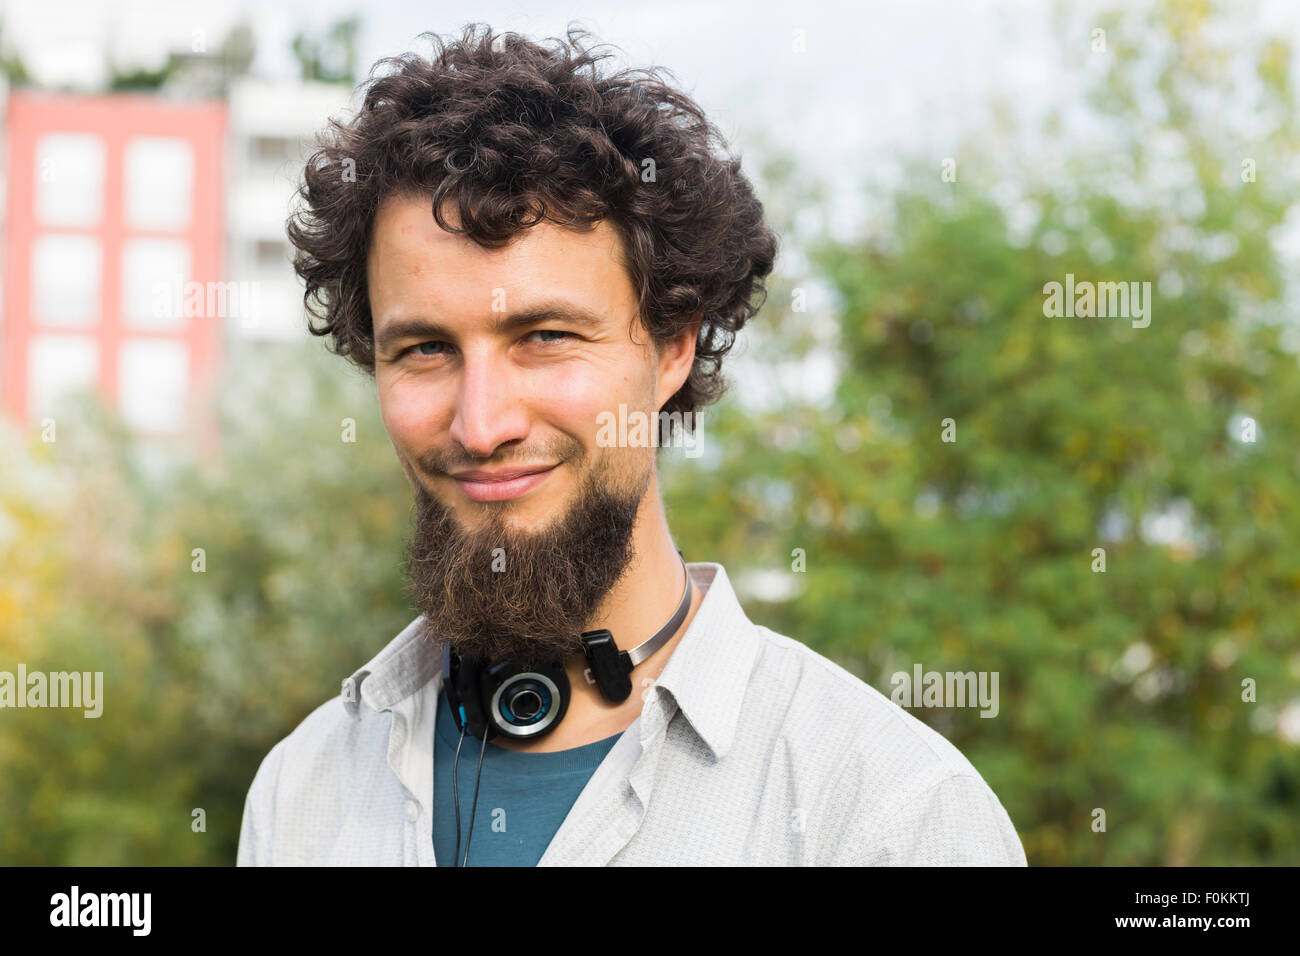 Porträt von lächelnden jungen Mann in einem städtischen Garten Stockfoto